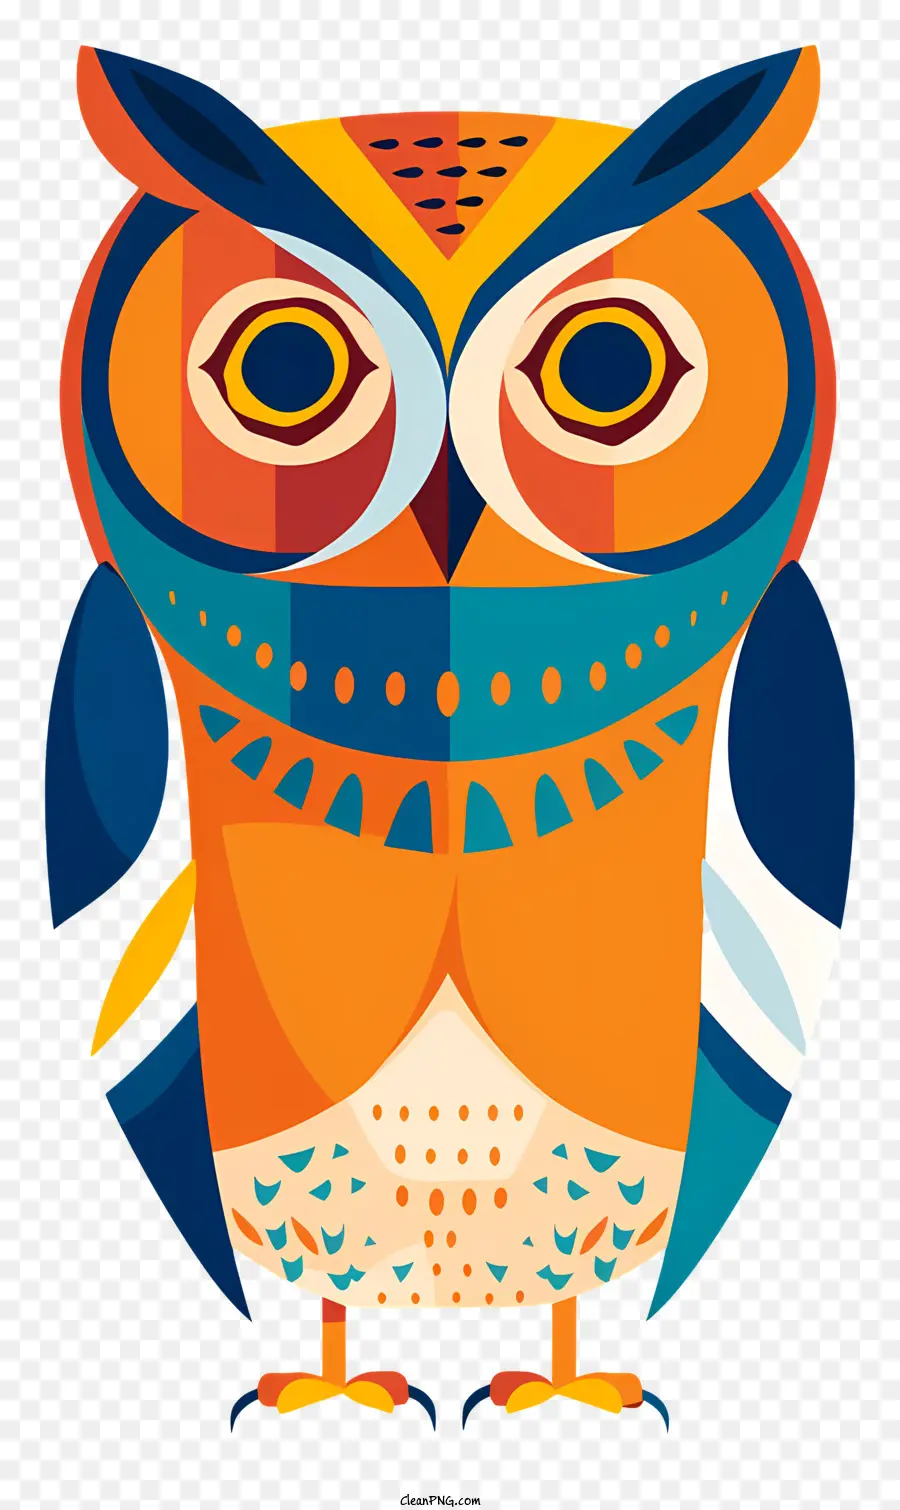 Cú Owl đầy màu cam và màu xanh lông màu xanh - Cú đầy màu sắc với đôi mắt nhắm lại nhìn xuống